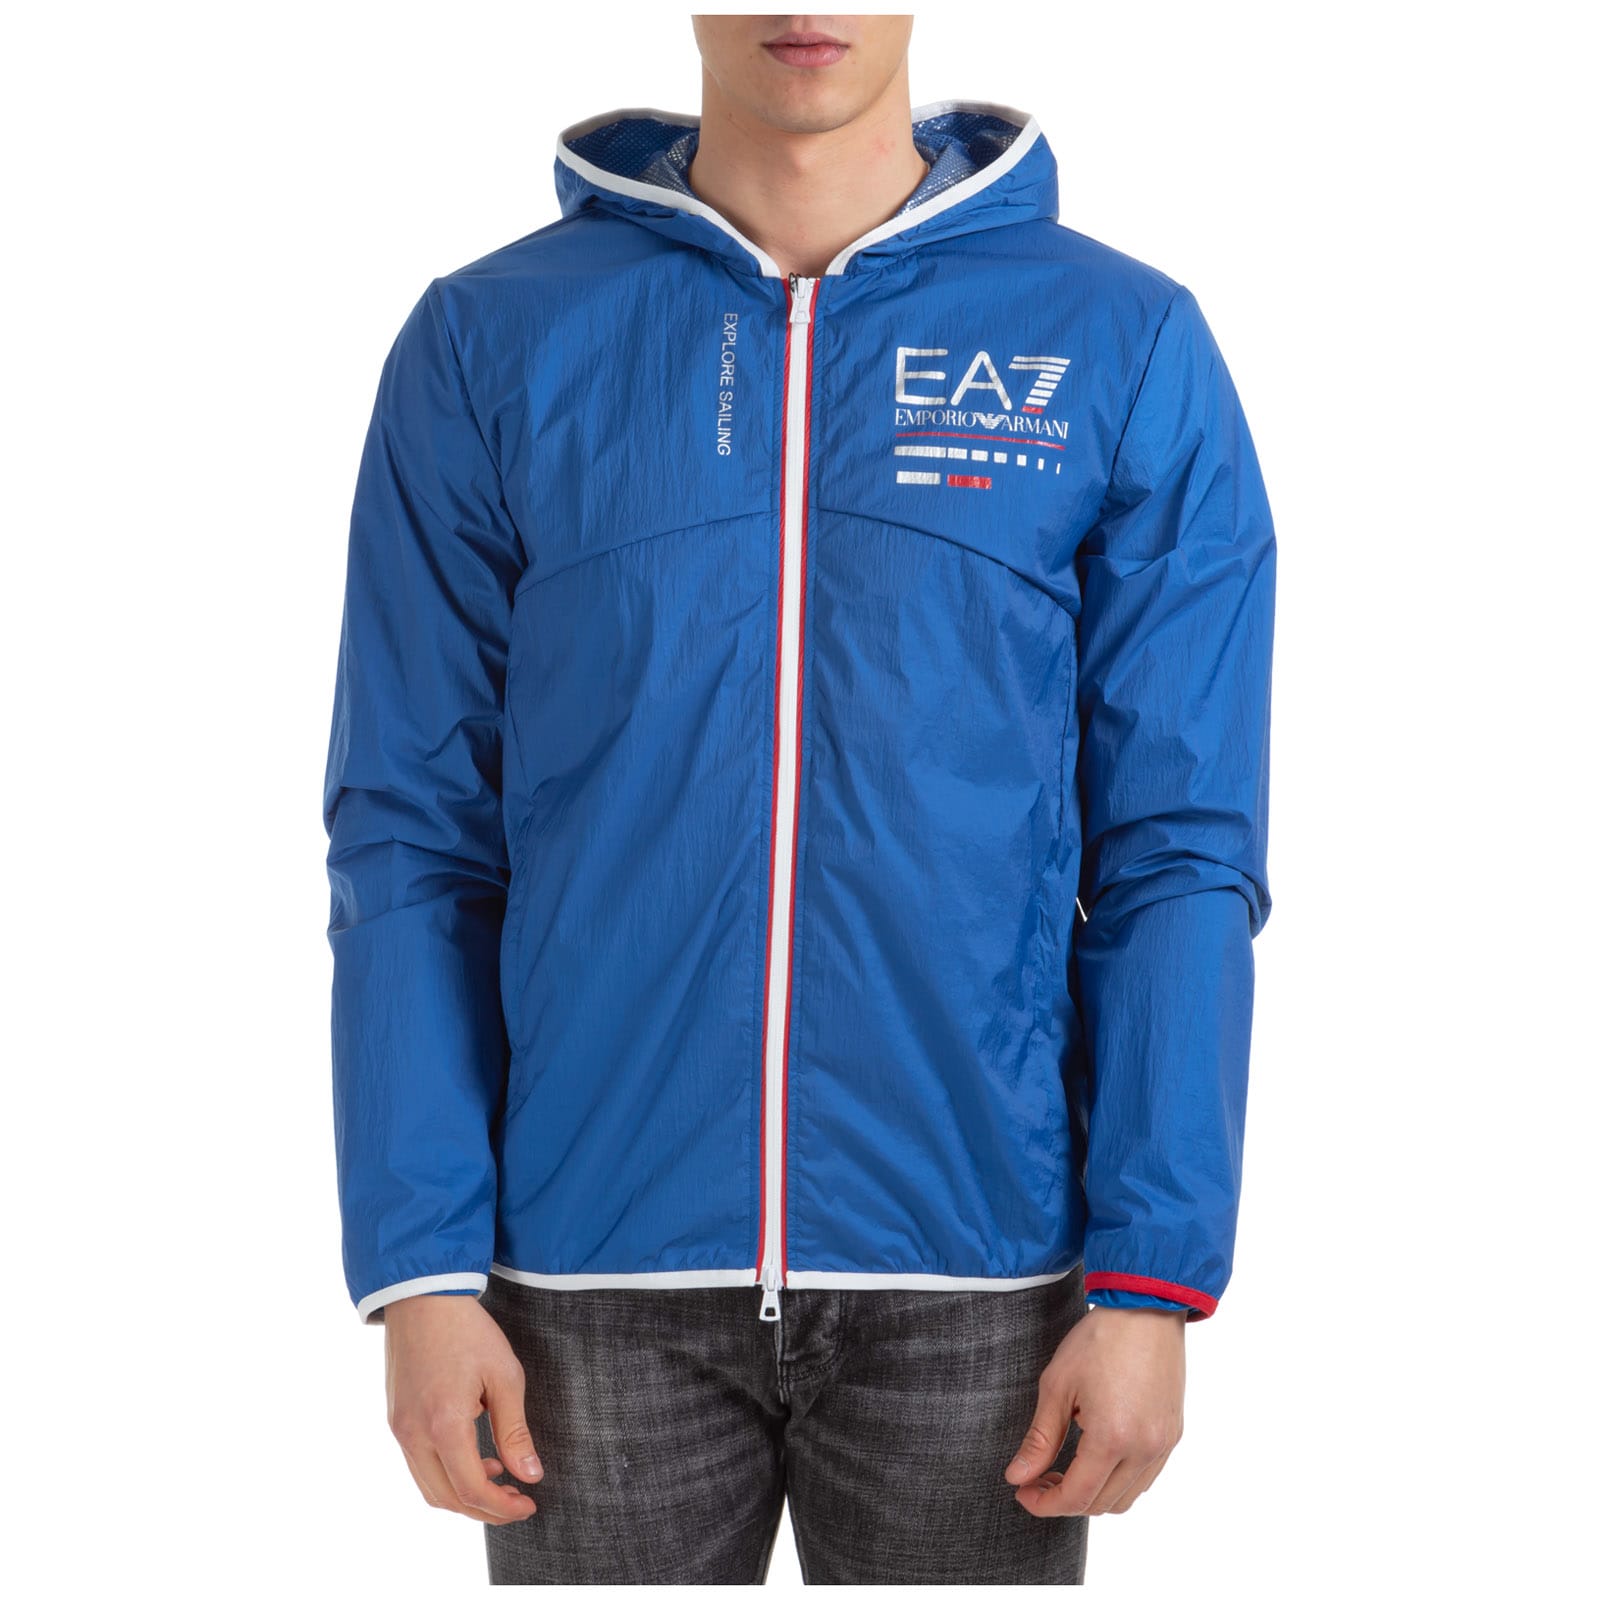 emporio armani ea7 sailing jacket